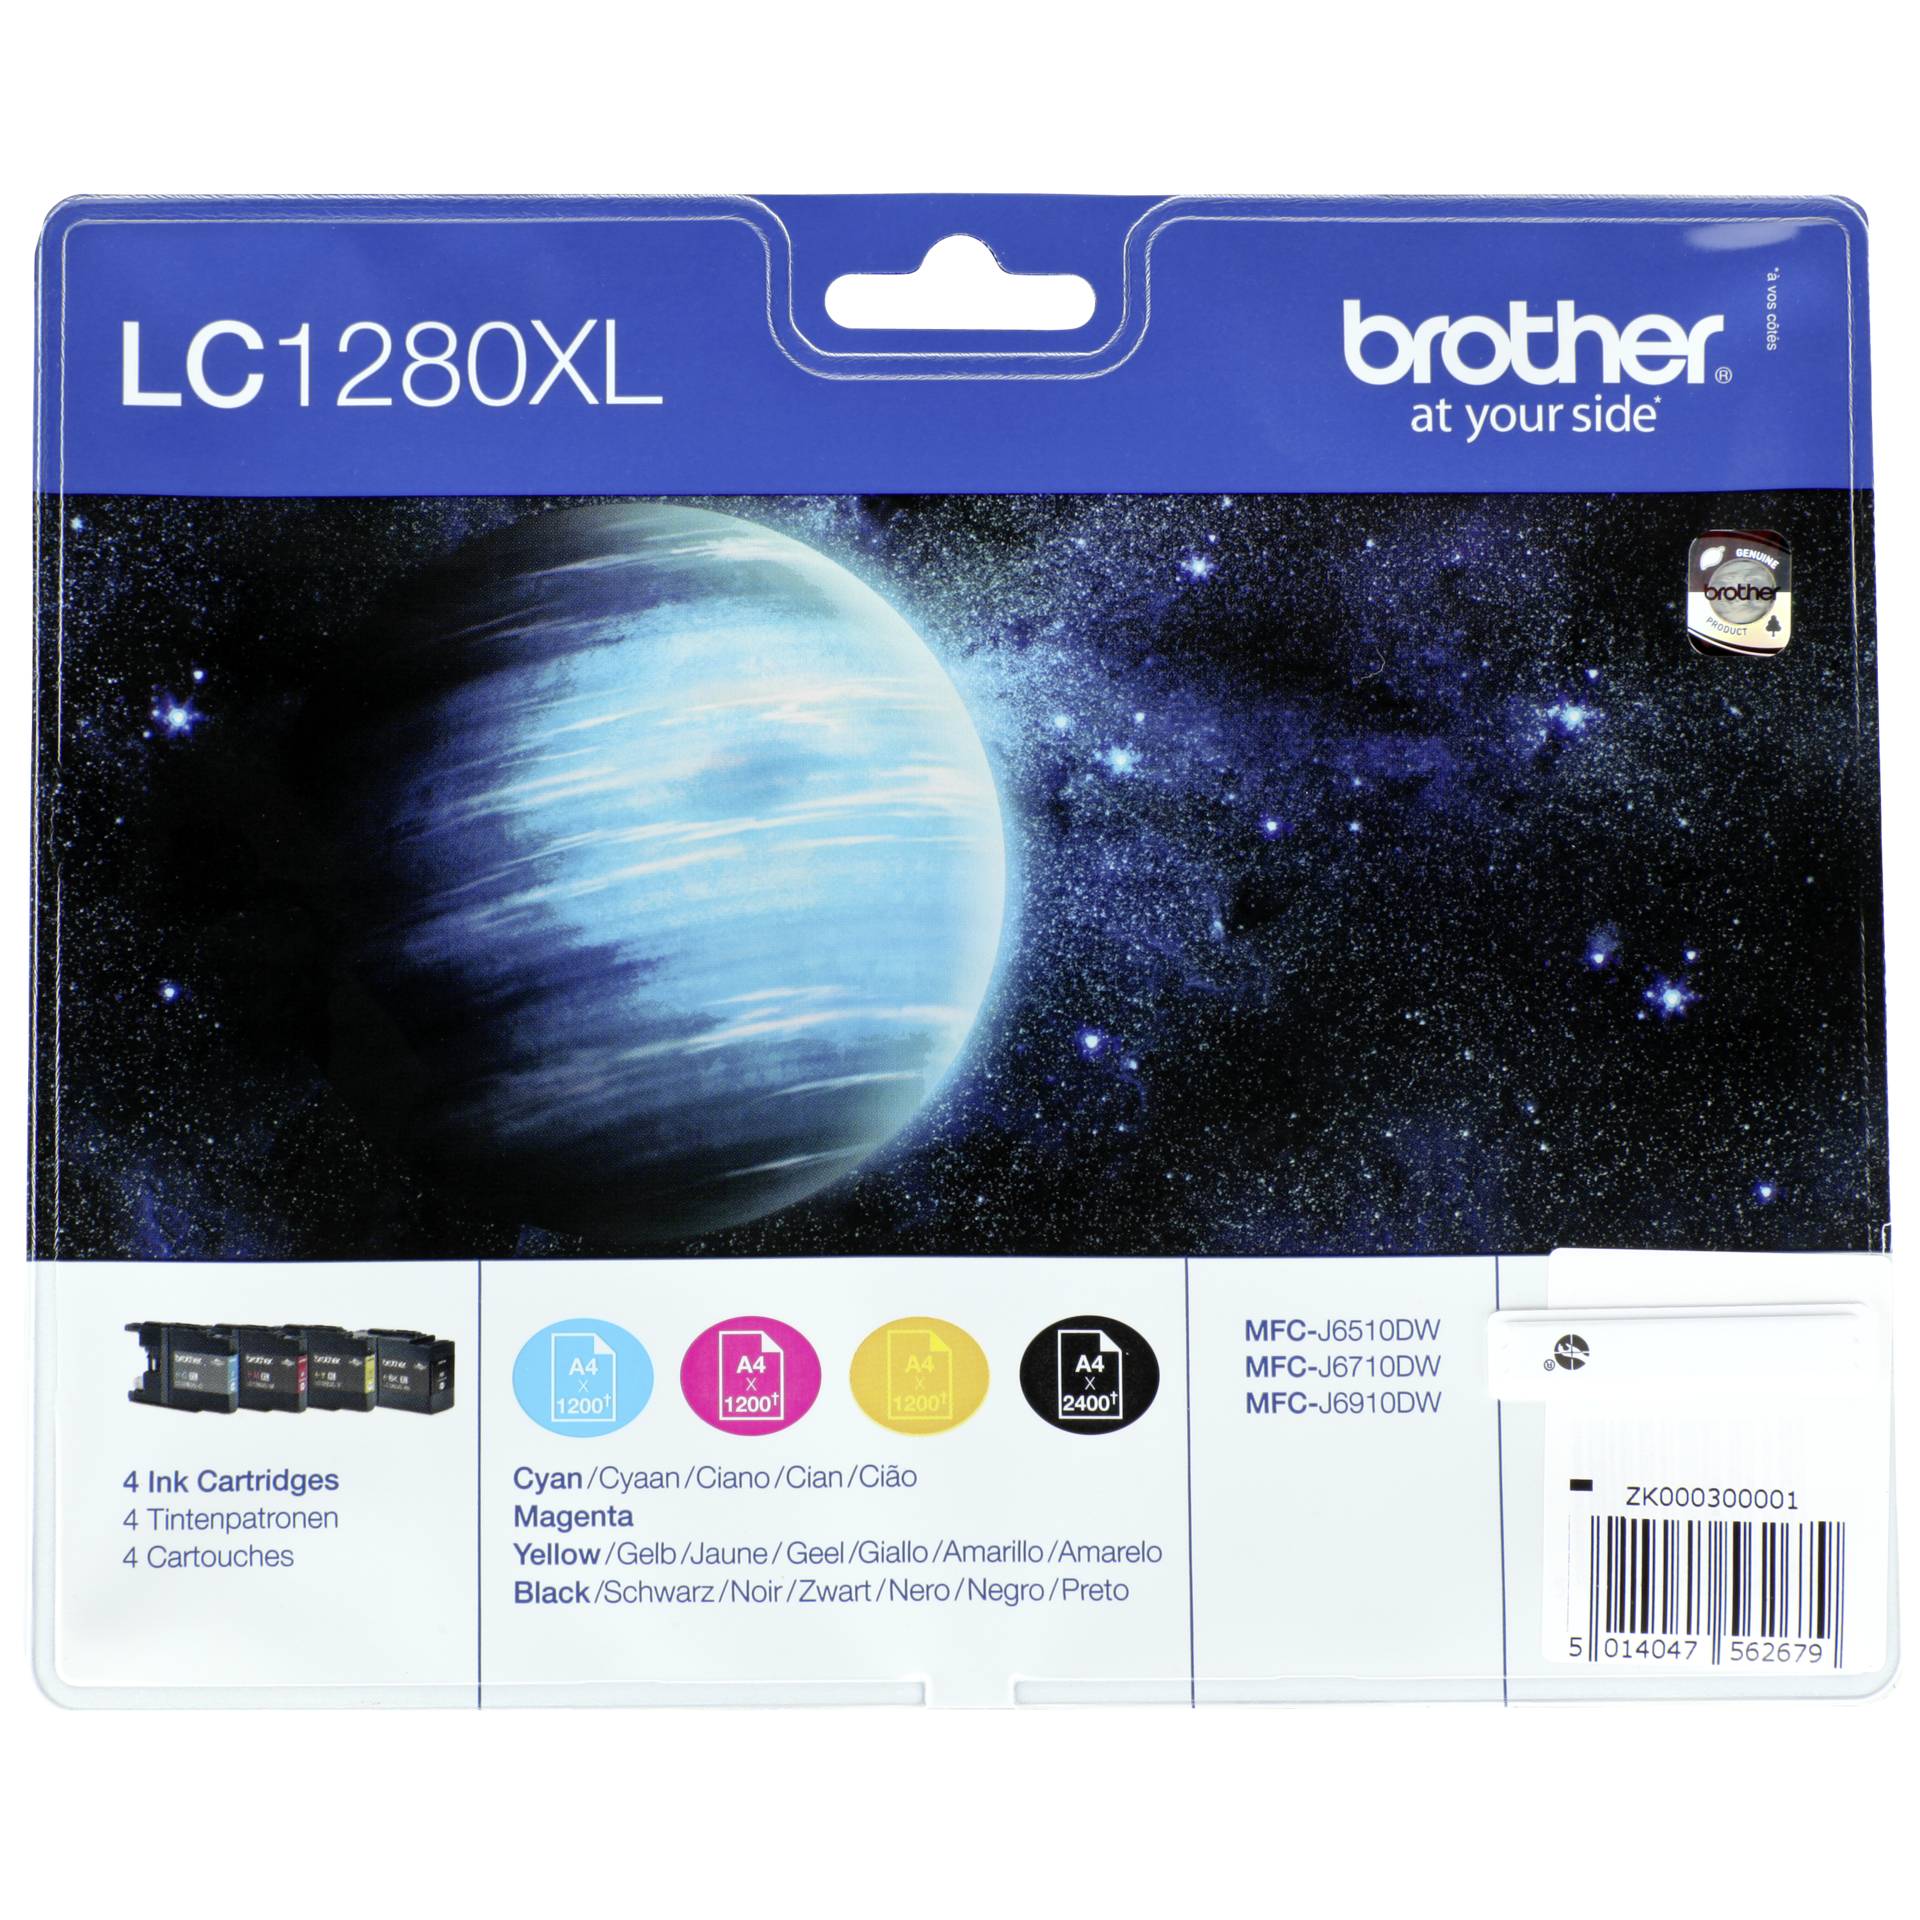 Brother LC1280XL Tinte Value Pack Original 2400 Seiten schwarz, je 1200 Seiten farbig